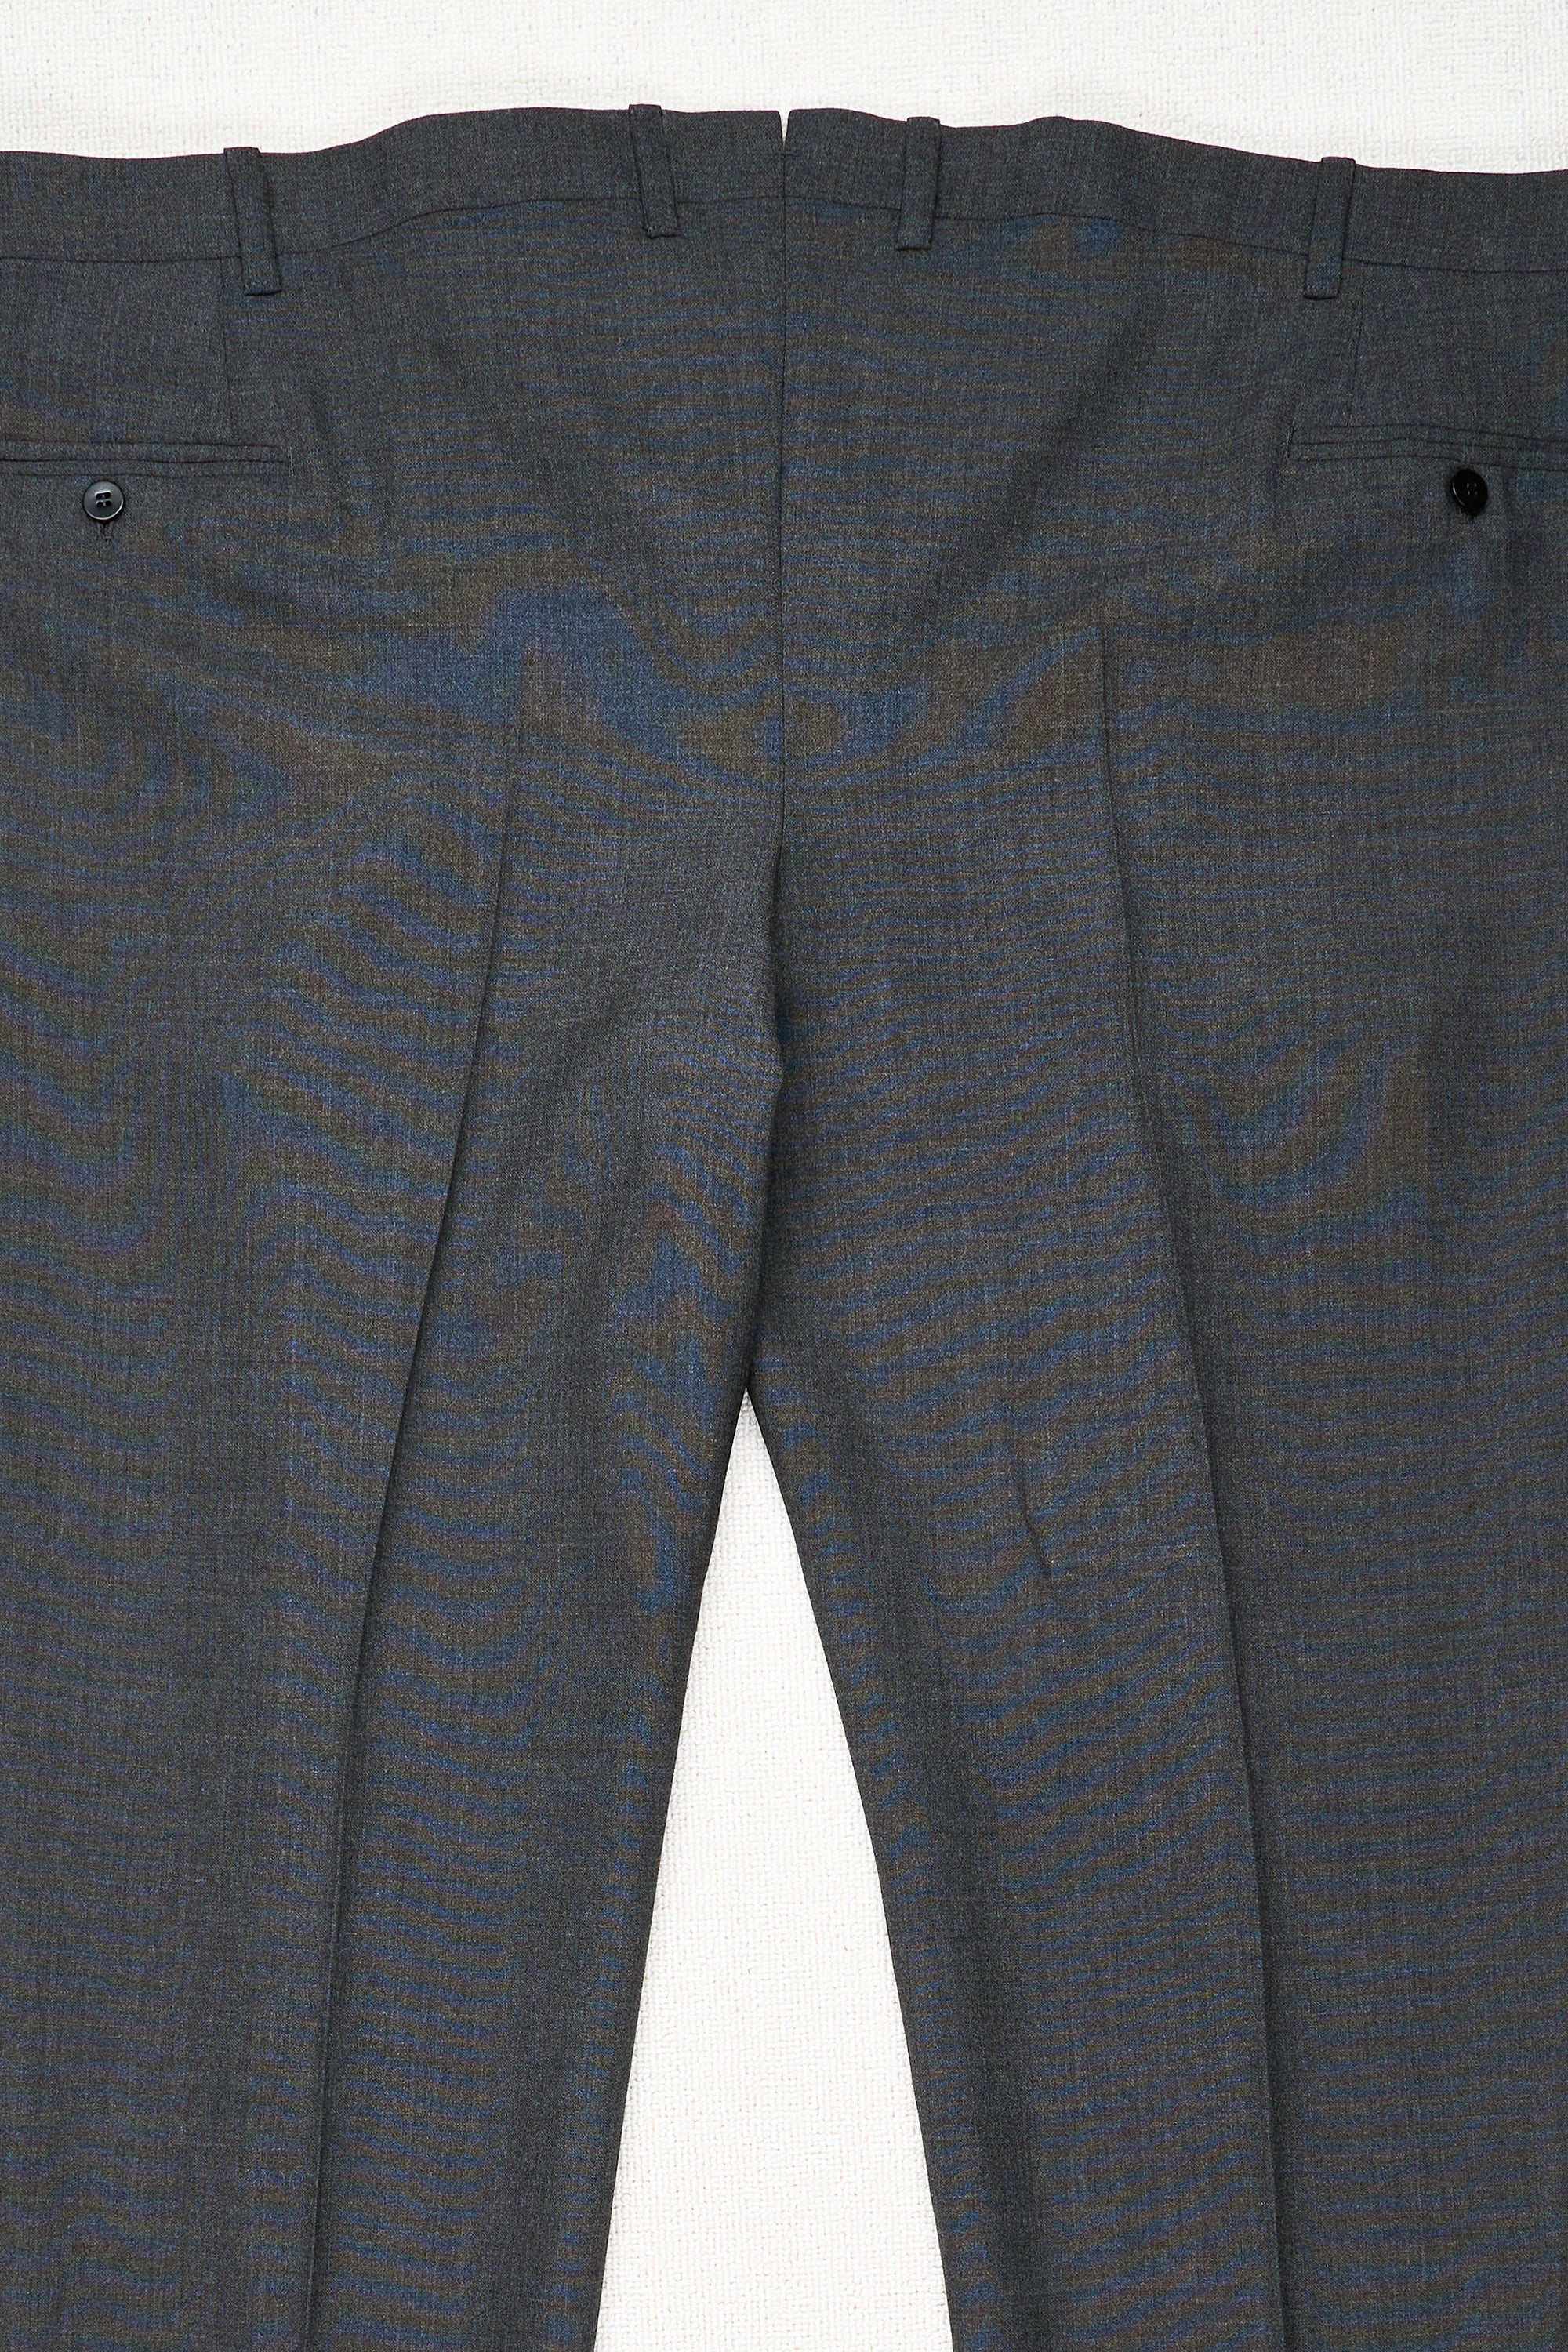 Orazio Luciano Grey Wool Single Pleat Trousers Bespoke